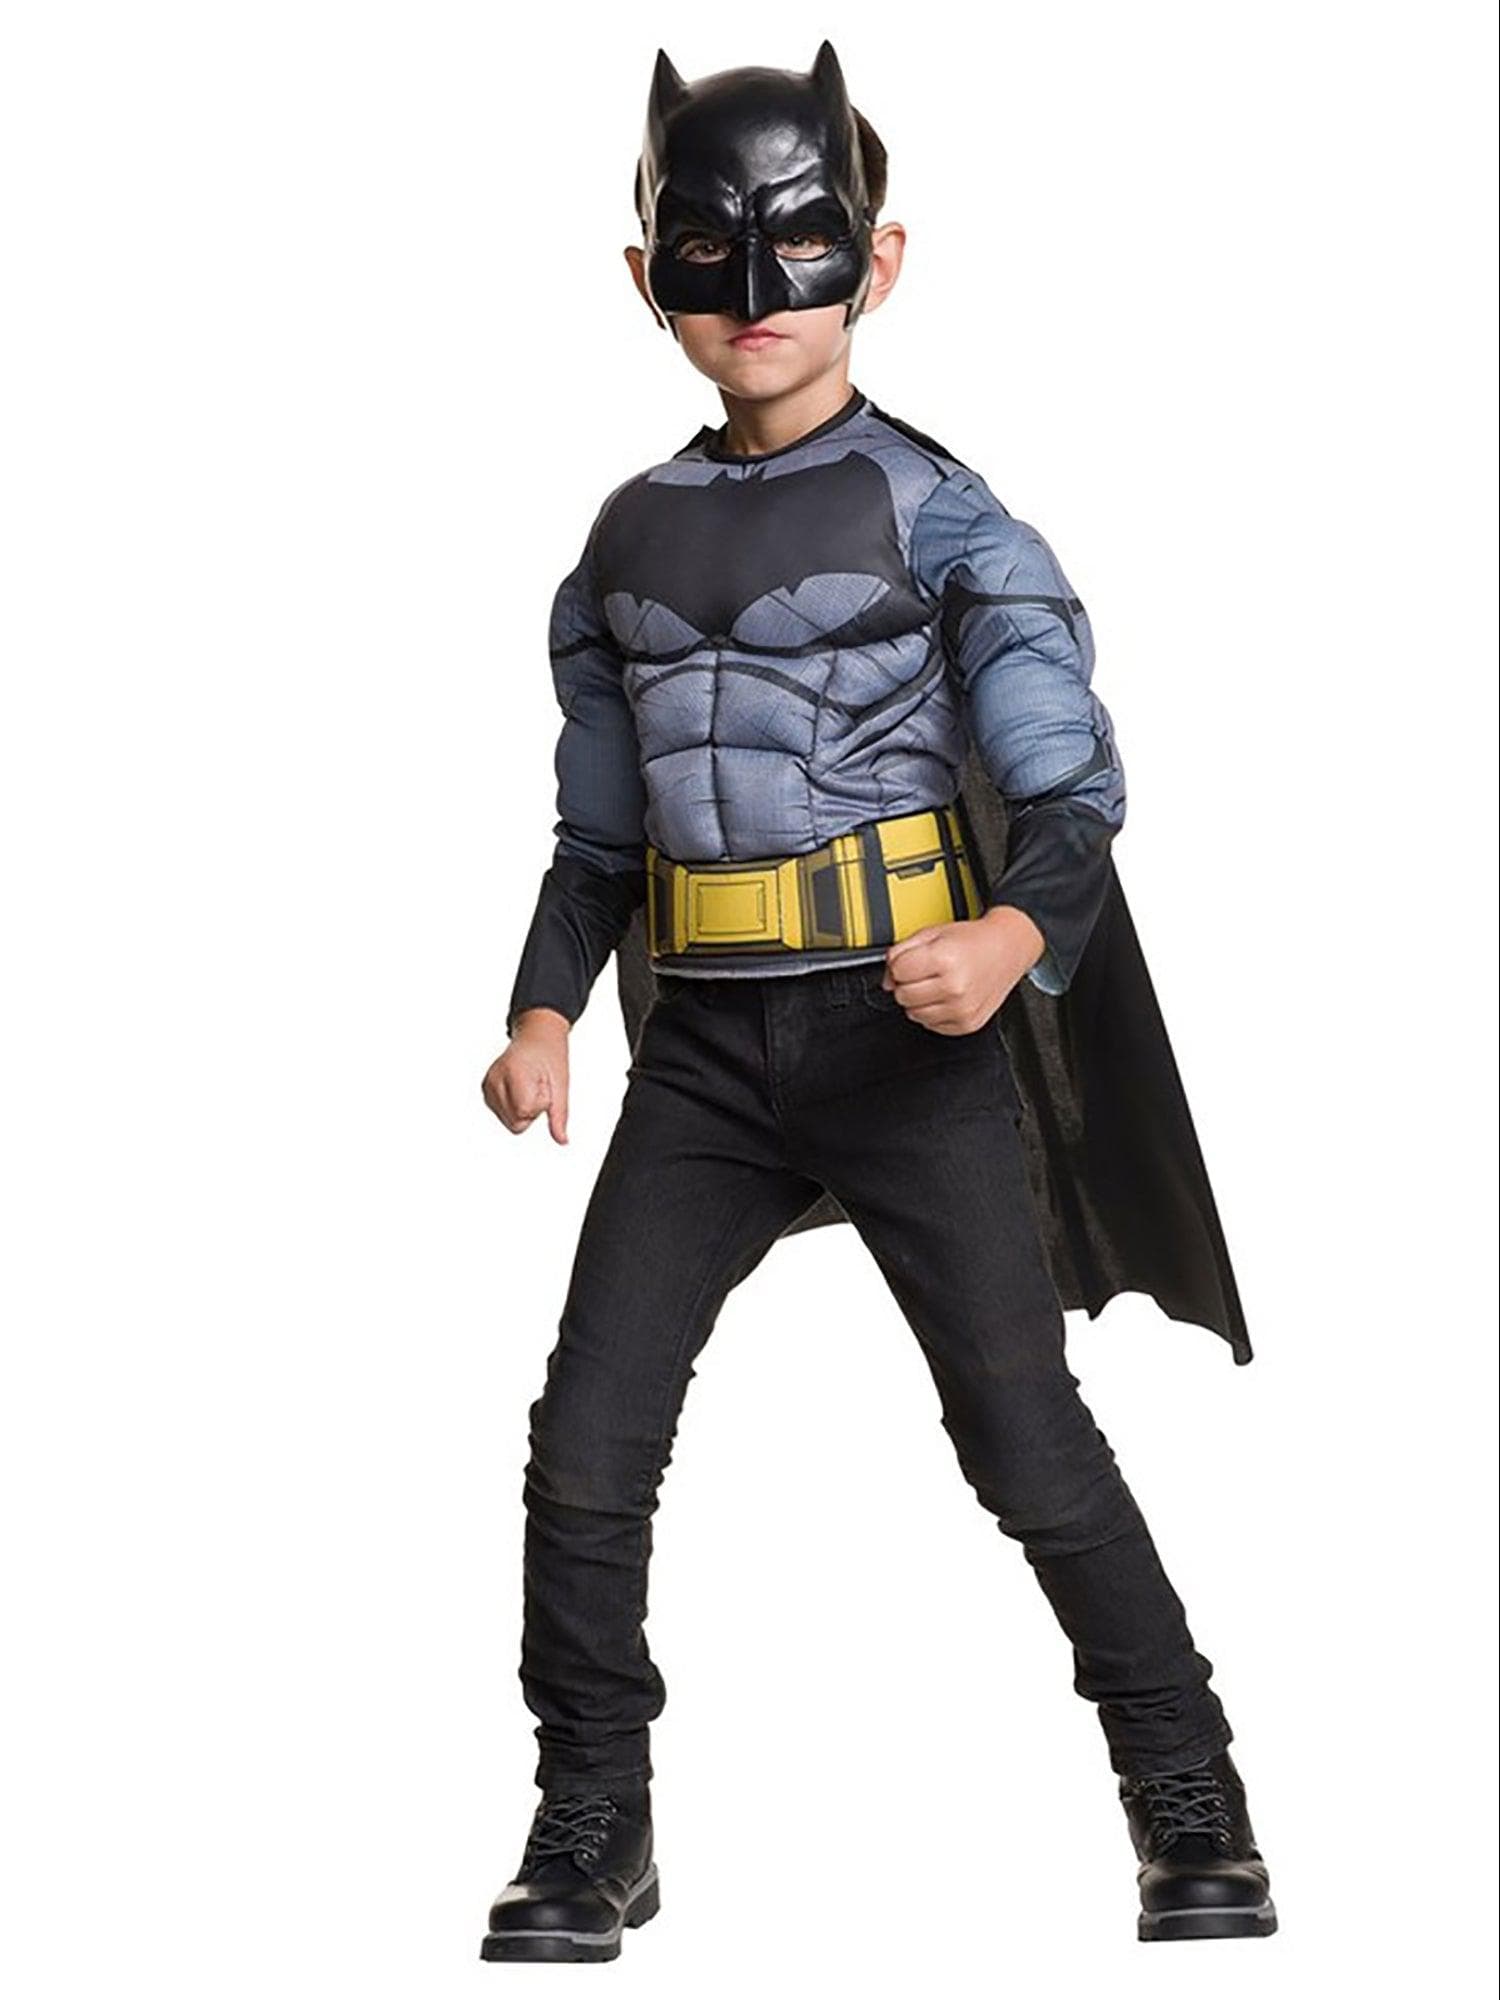 Kids Deluxe Batman Costume - costumes.com